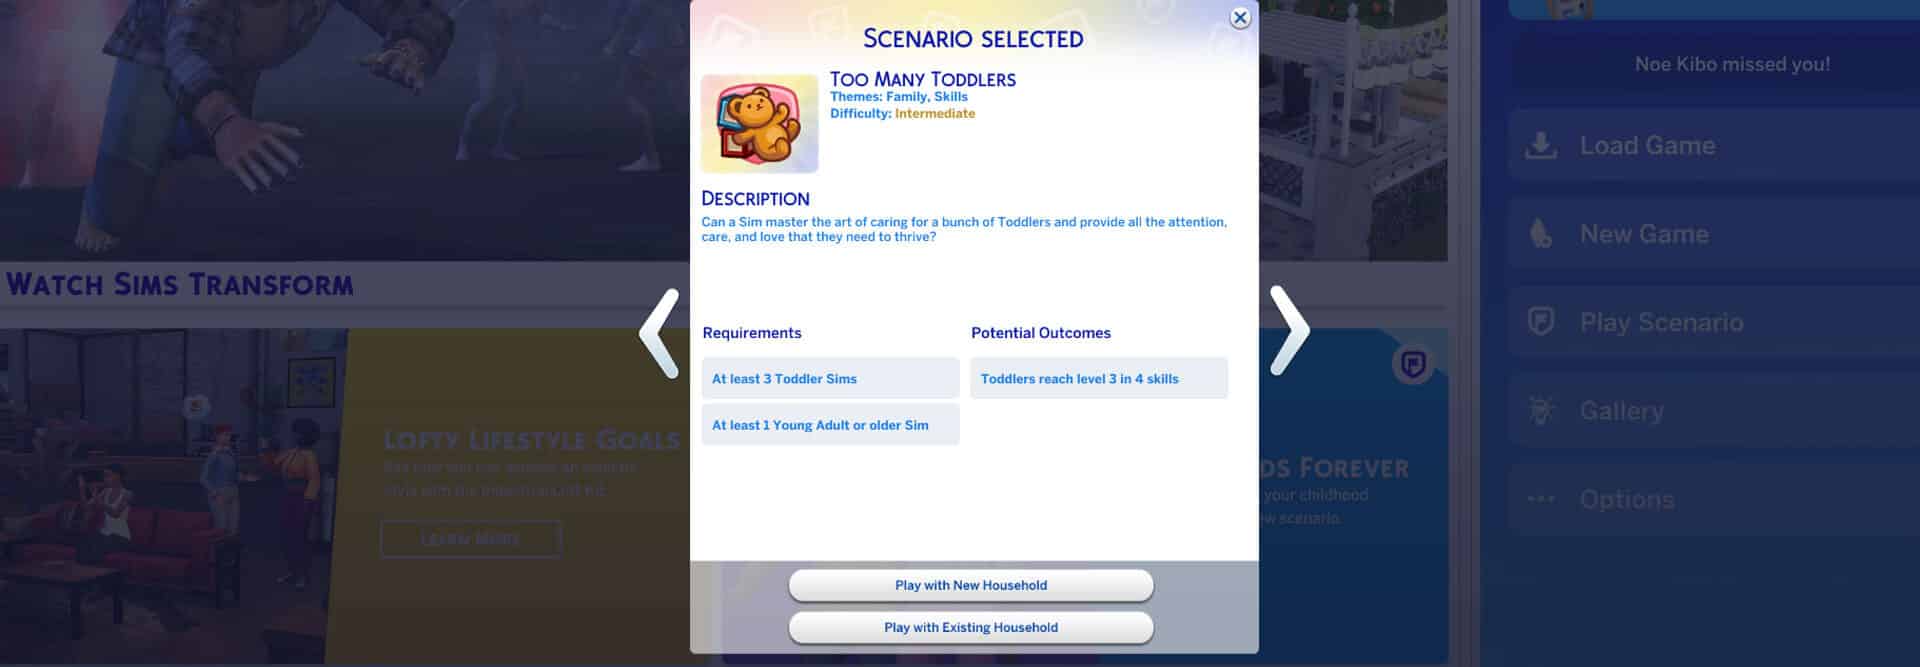 the sims 4 scenario menu